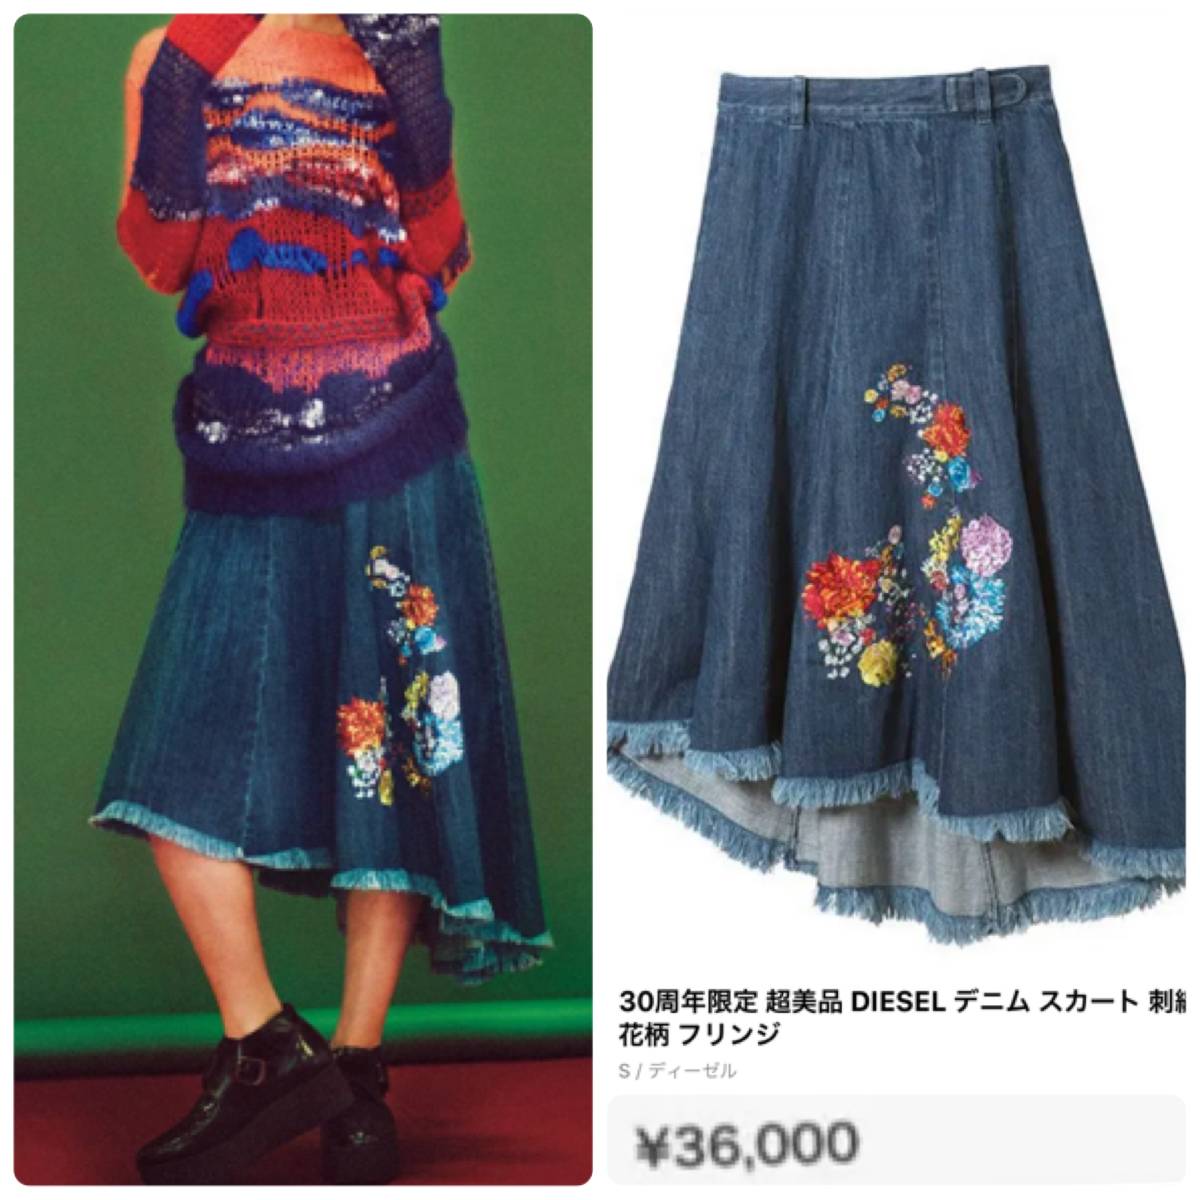  обычная цена :39,600 иен * DIESEL * ограничение Denim юбка / цветок вышивка / цветочный принт / длинный / flair / индиго / дизель / YUKO KOIKE / женский 